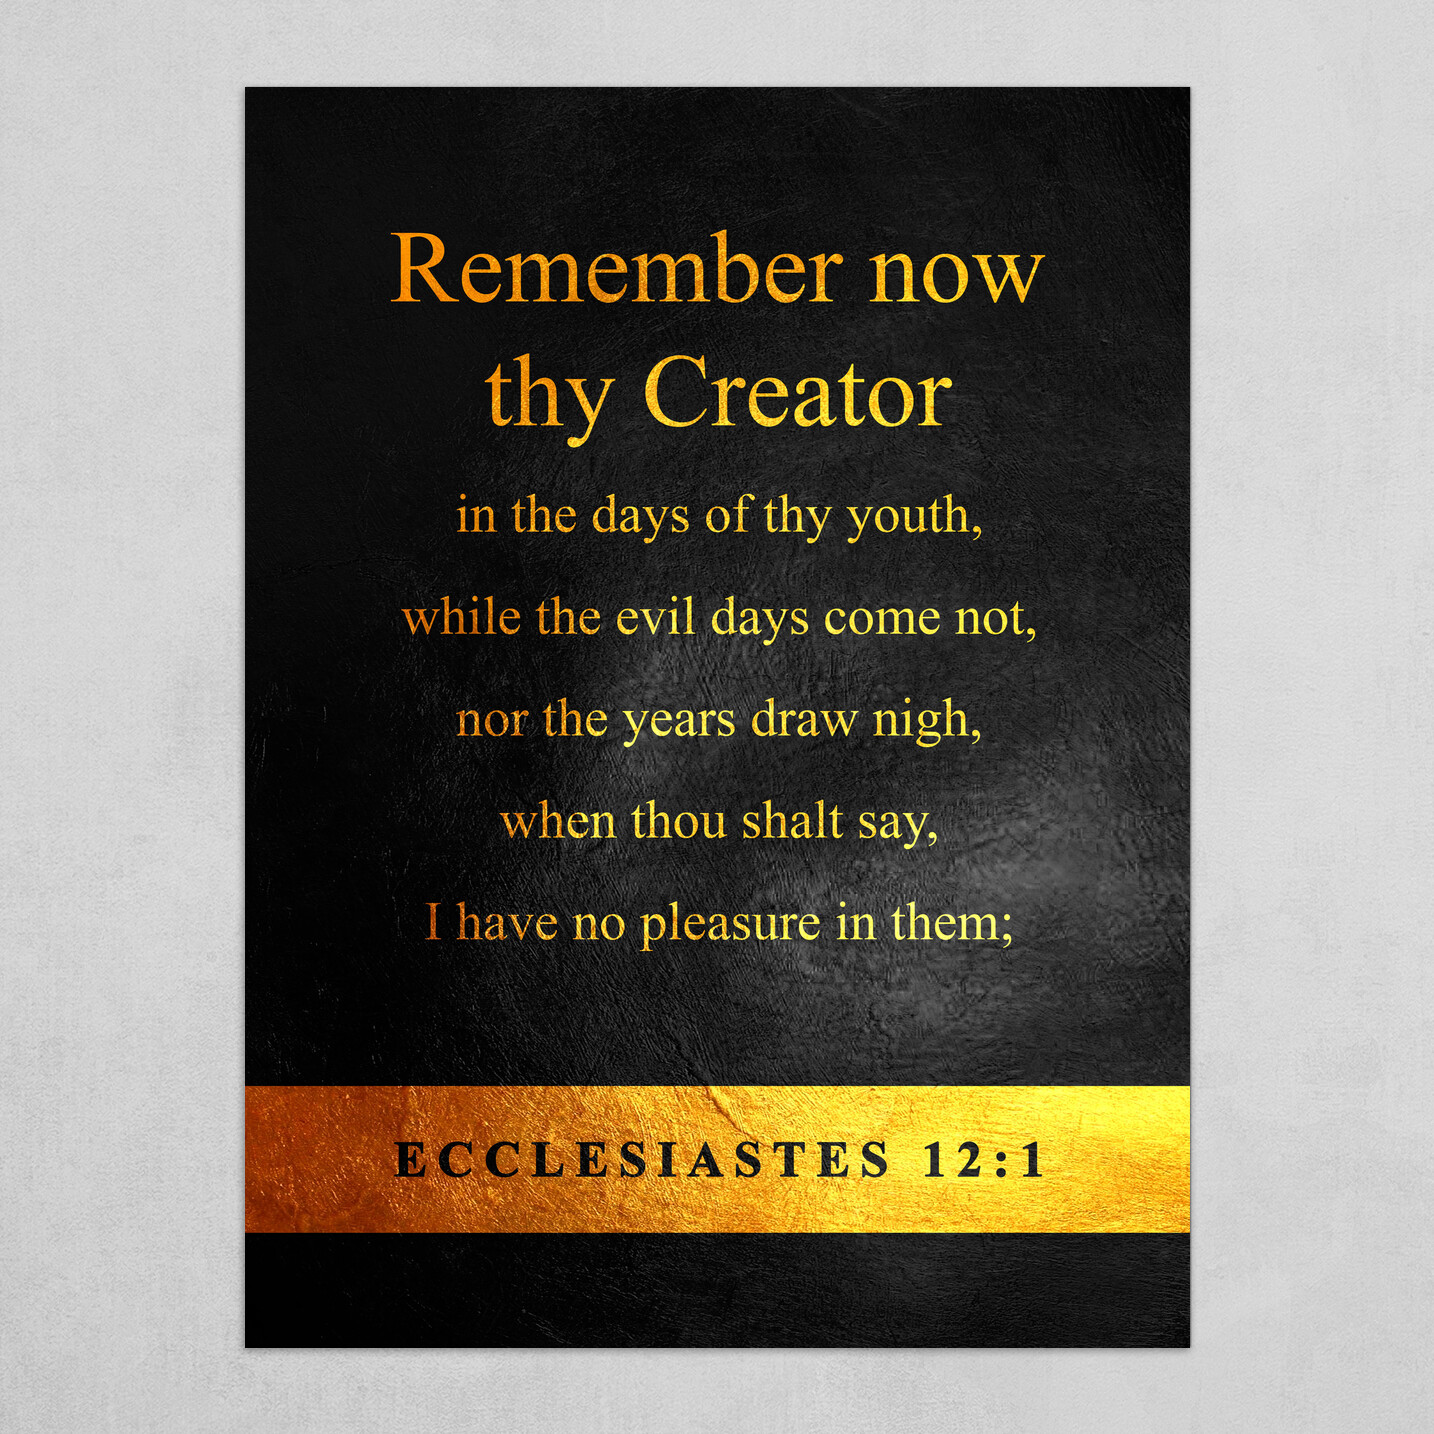 Ecclesiastes 12:1 Bible Verse Text Art